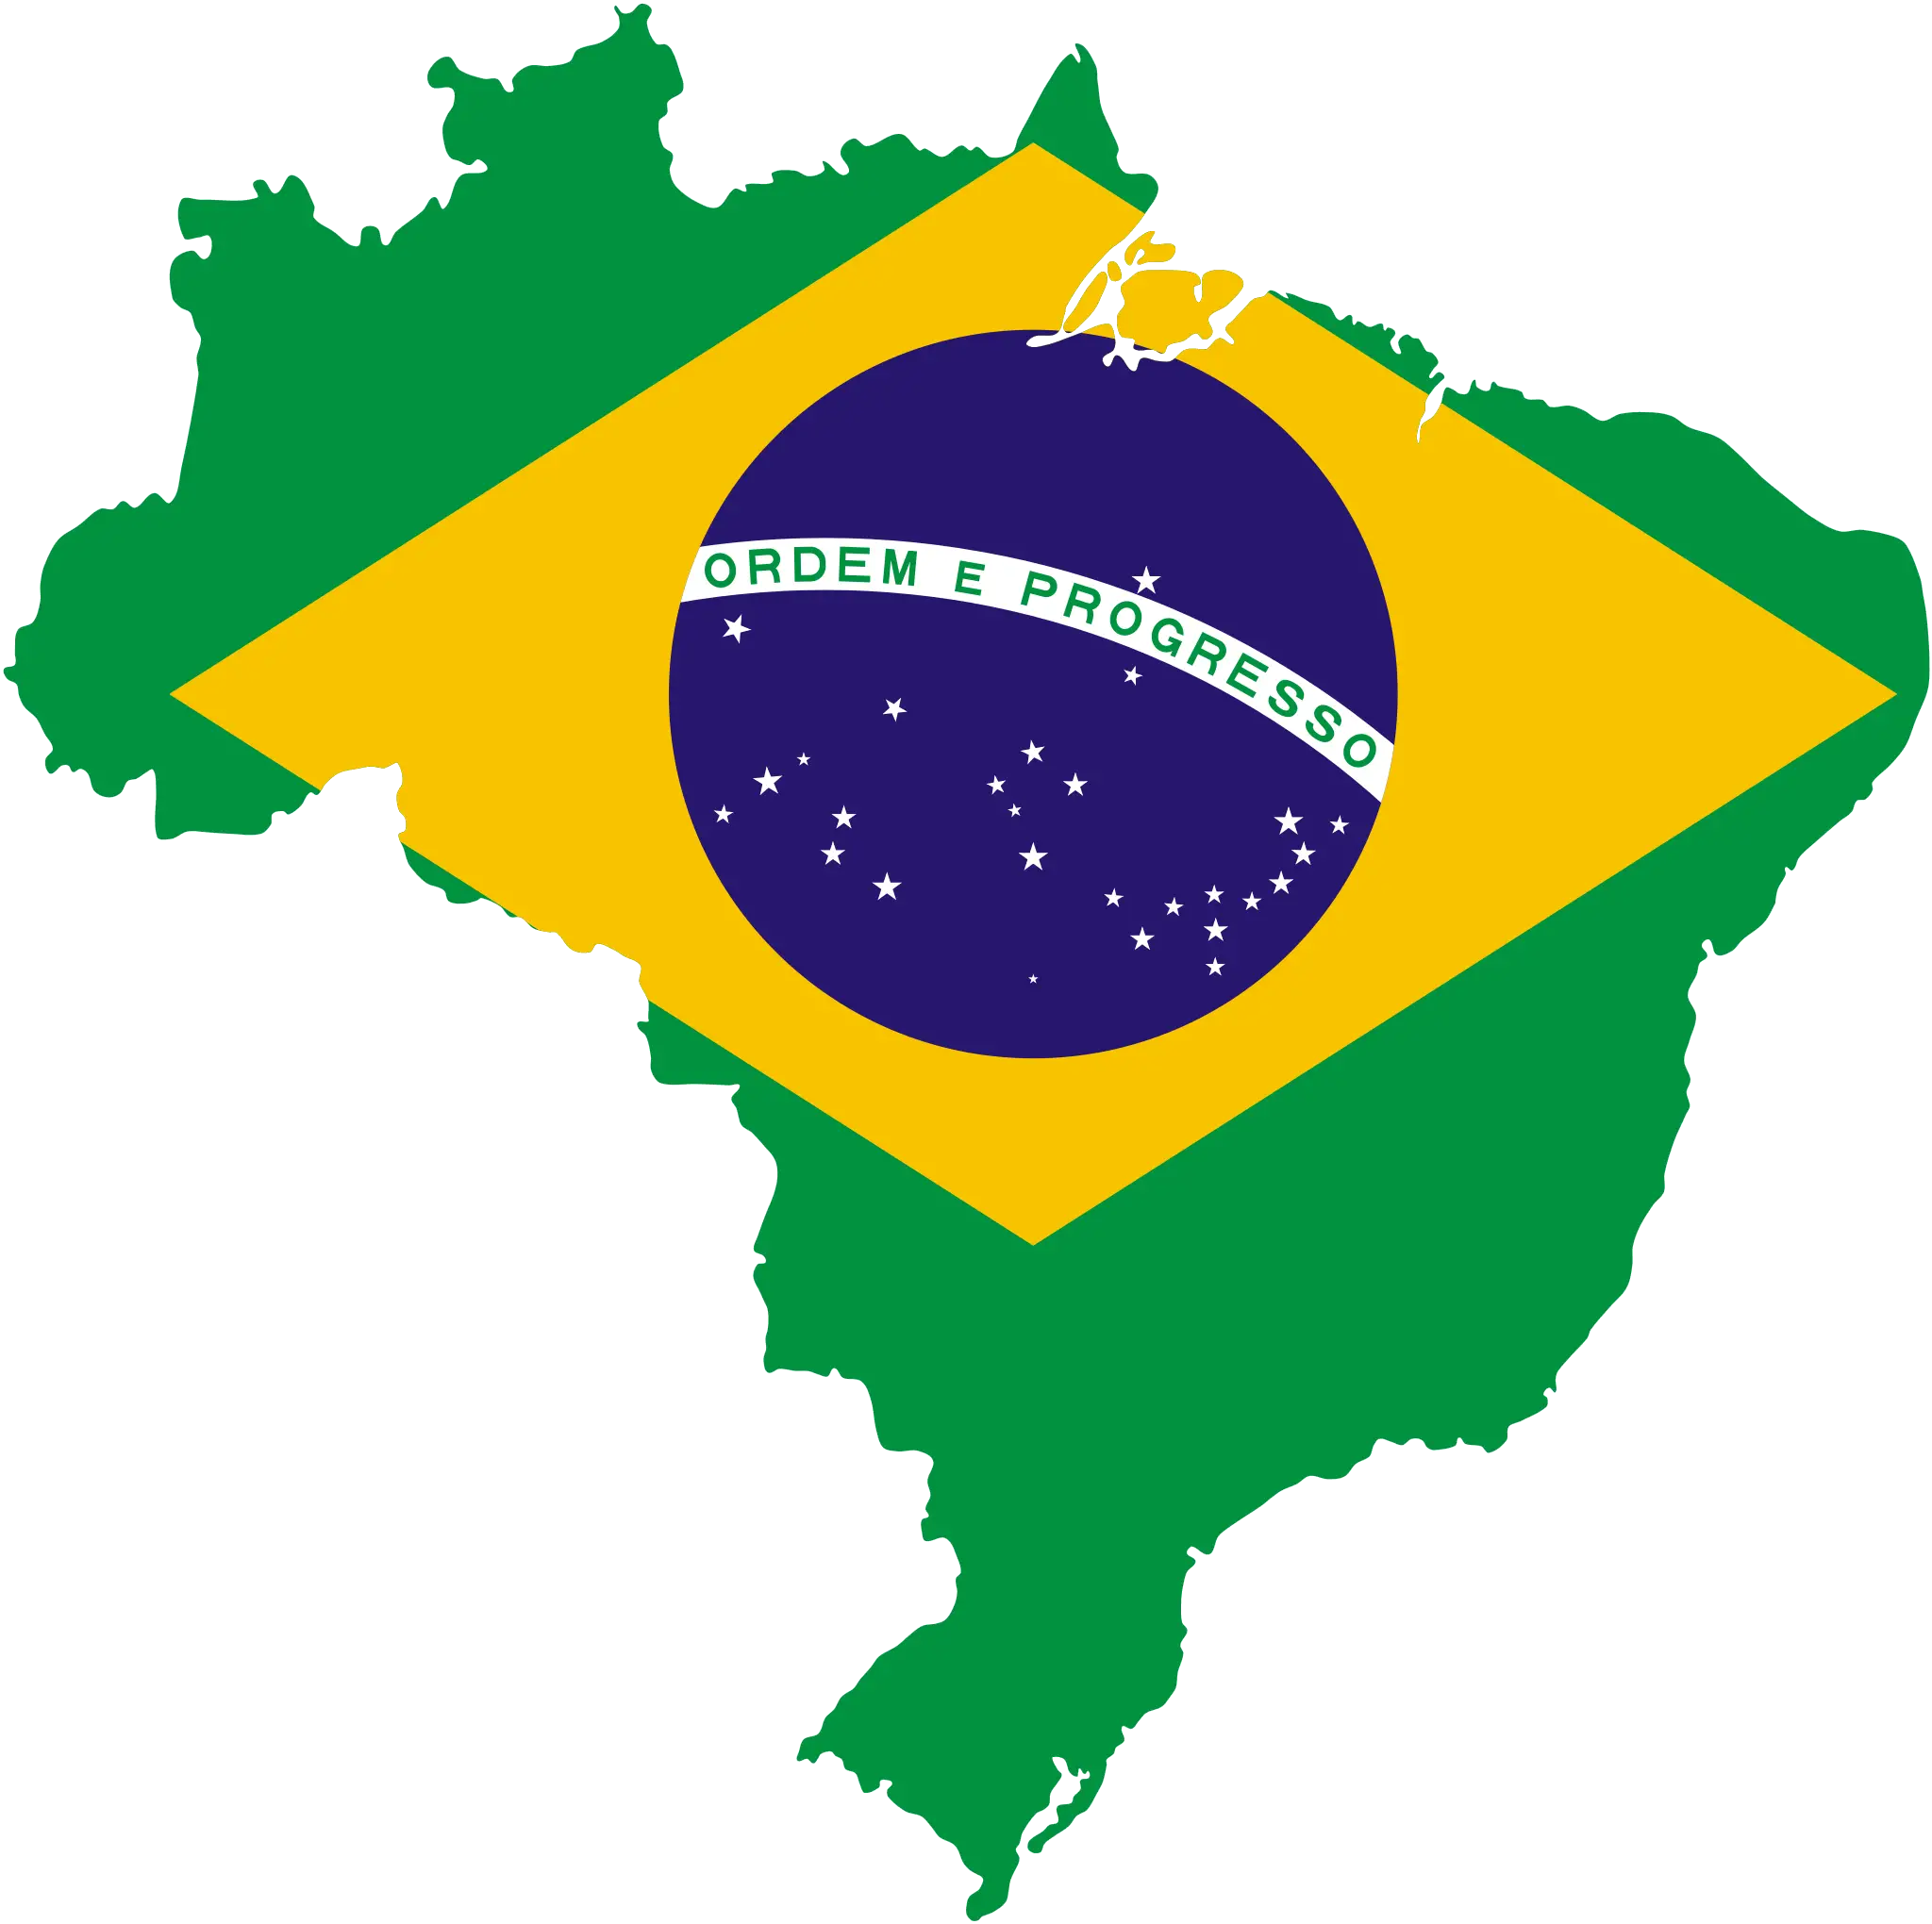 Brazil Flag Map